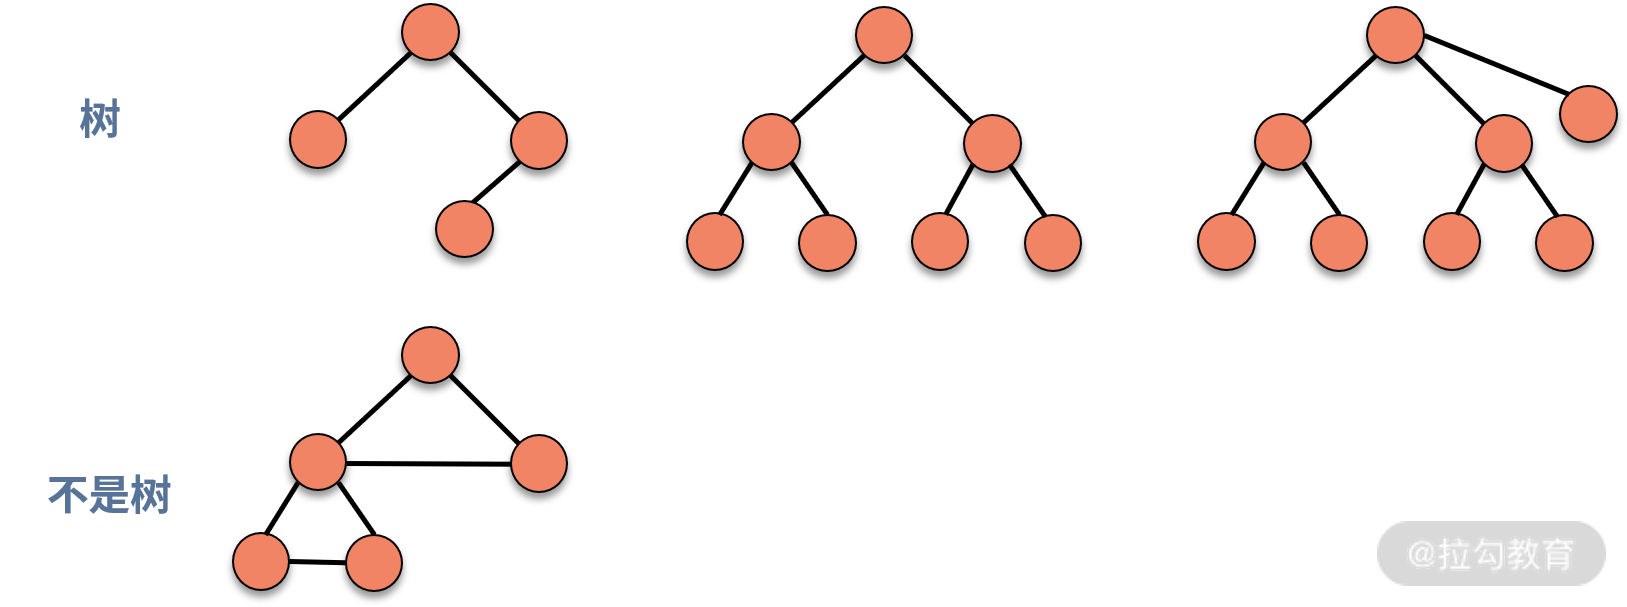 09 | 树和二叉树：分支关系与层次结构下，如何有效实现增删查？ - 图1